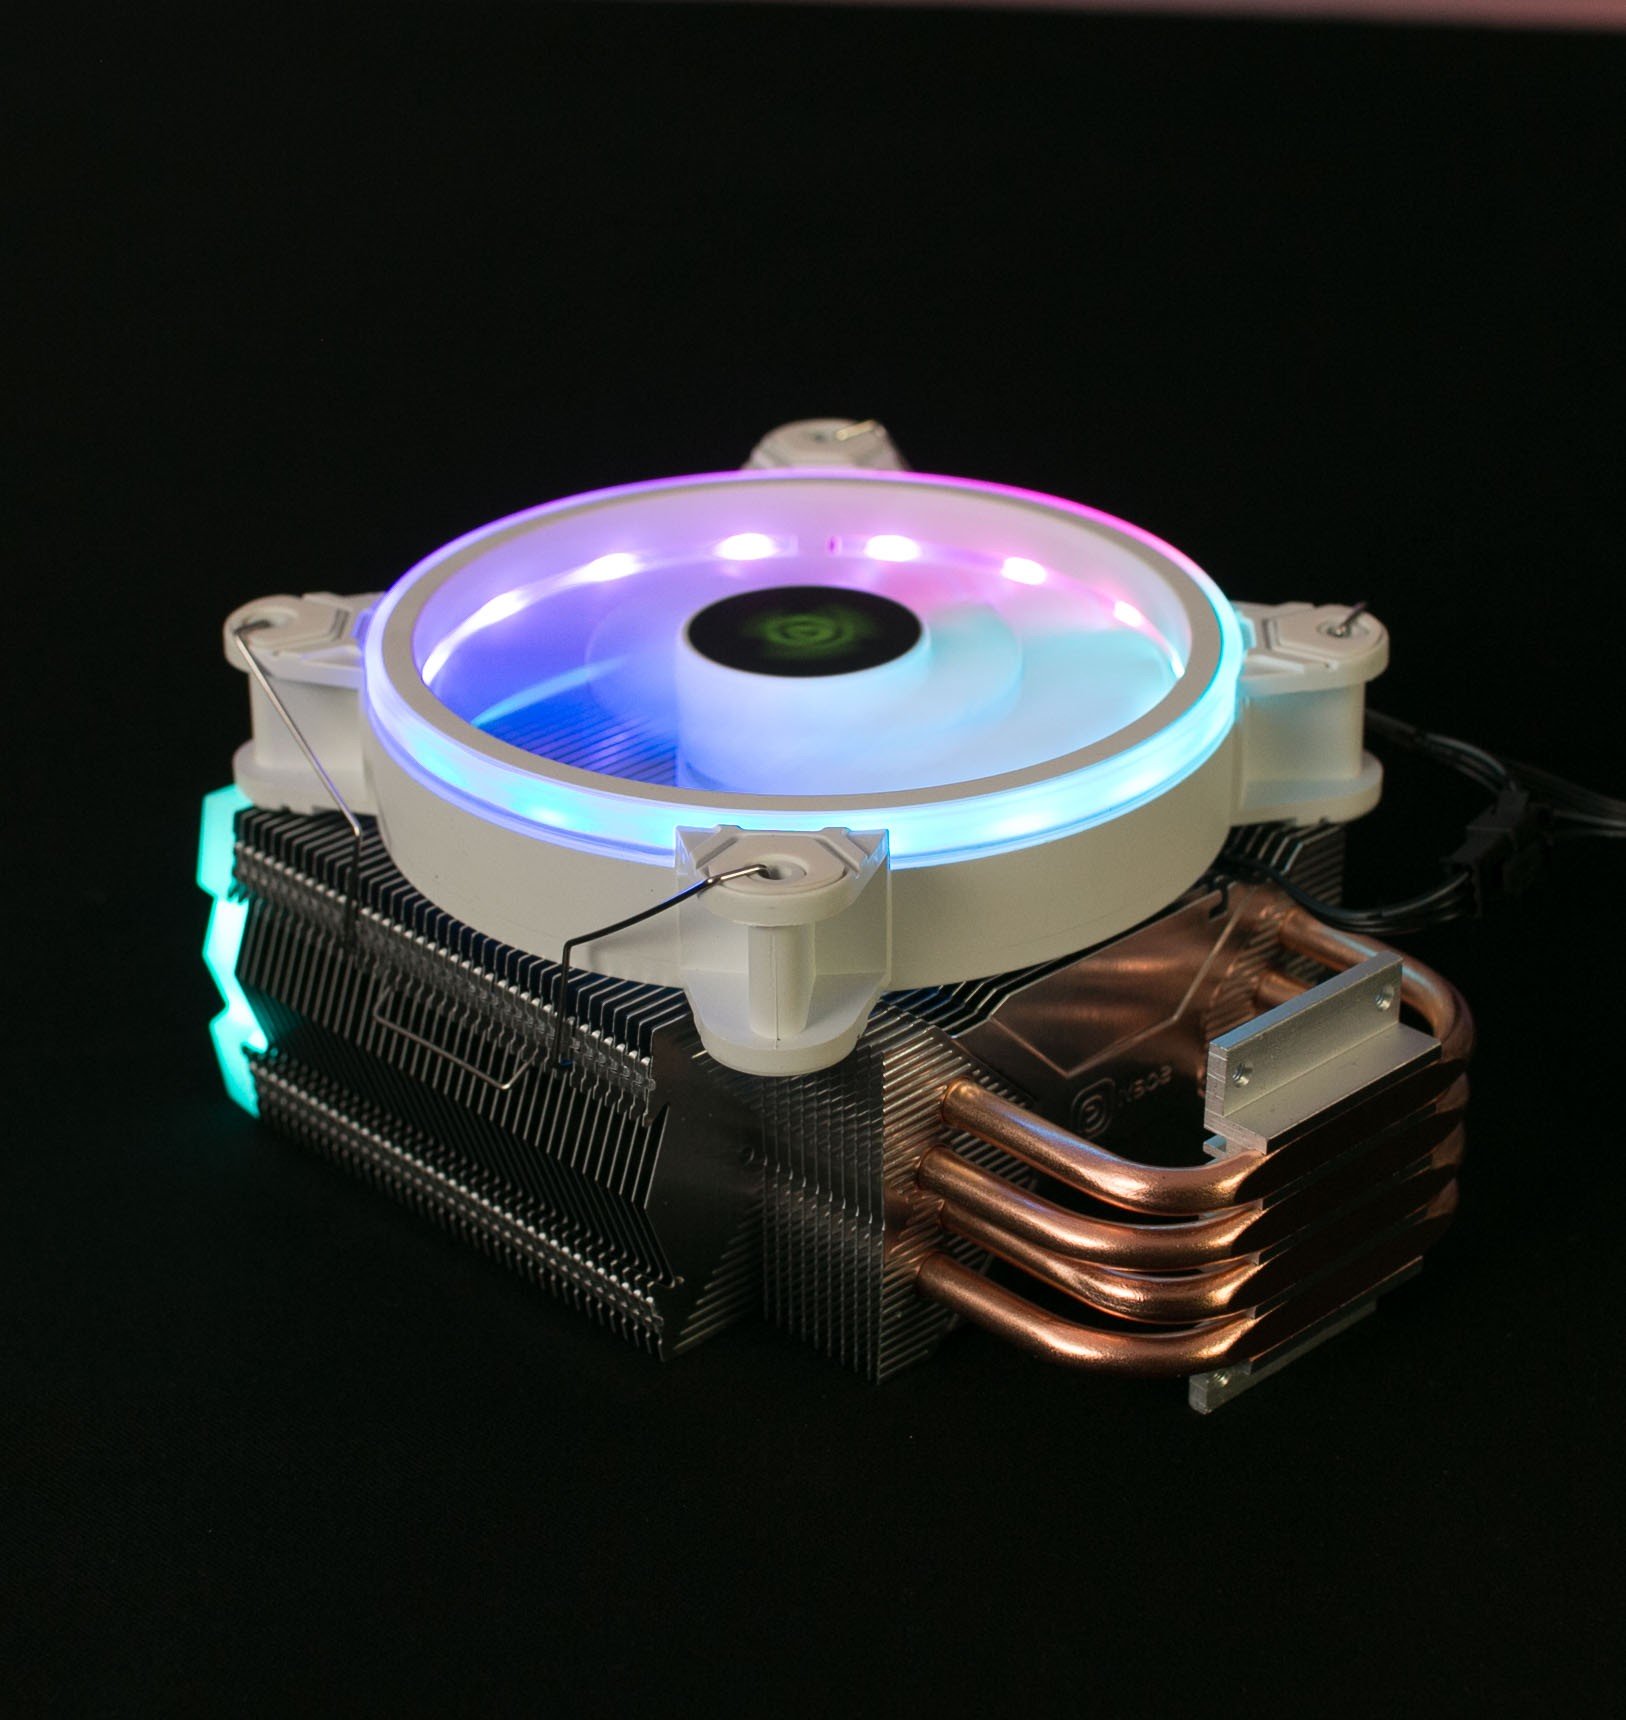 Tản Nhiệt CPU VSPTech V400 Plus RGB Air Cooling